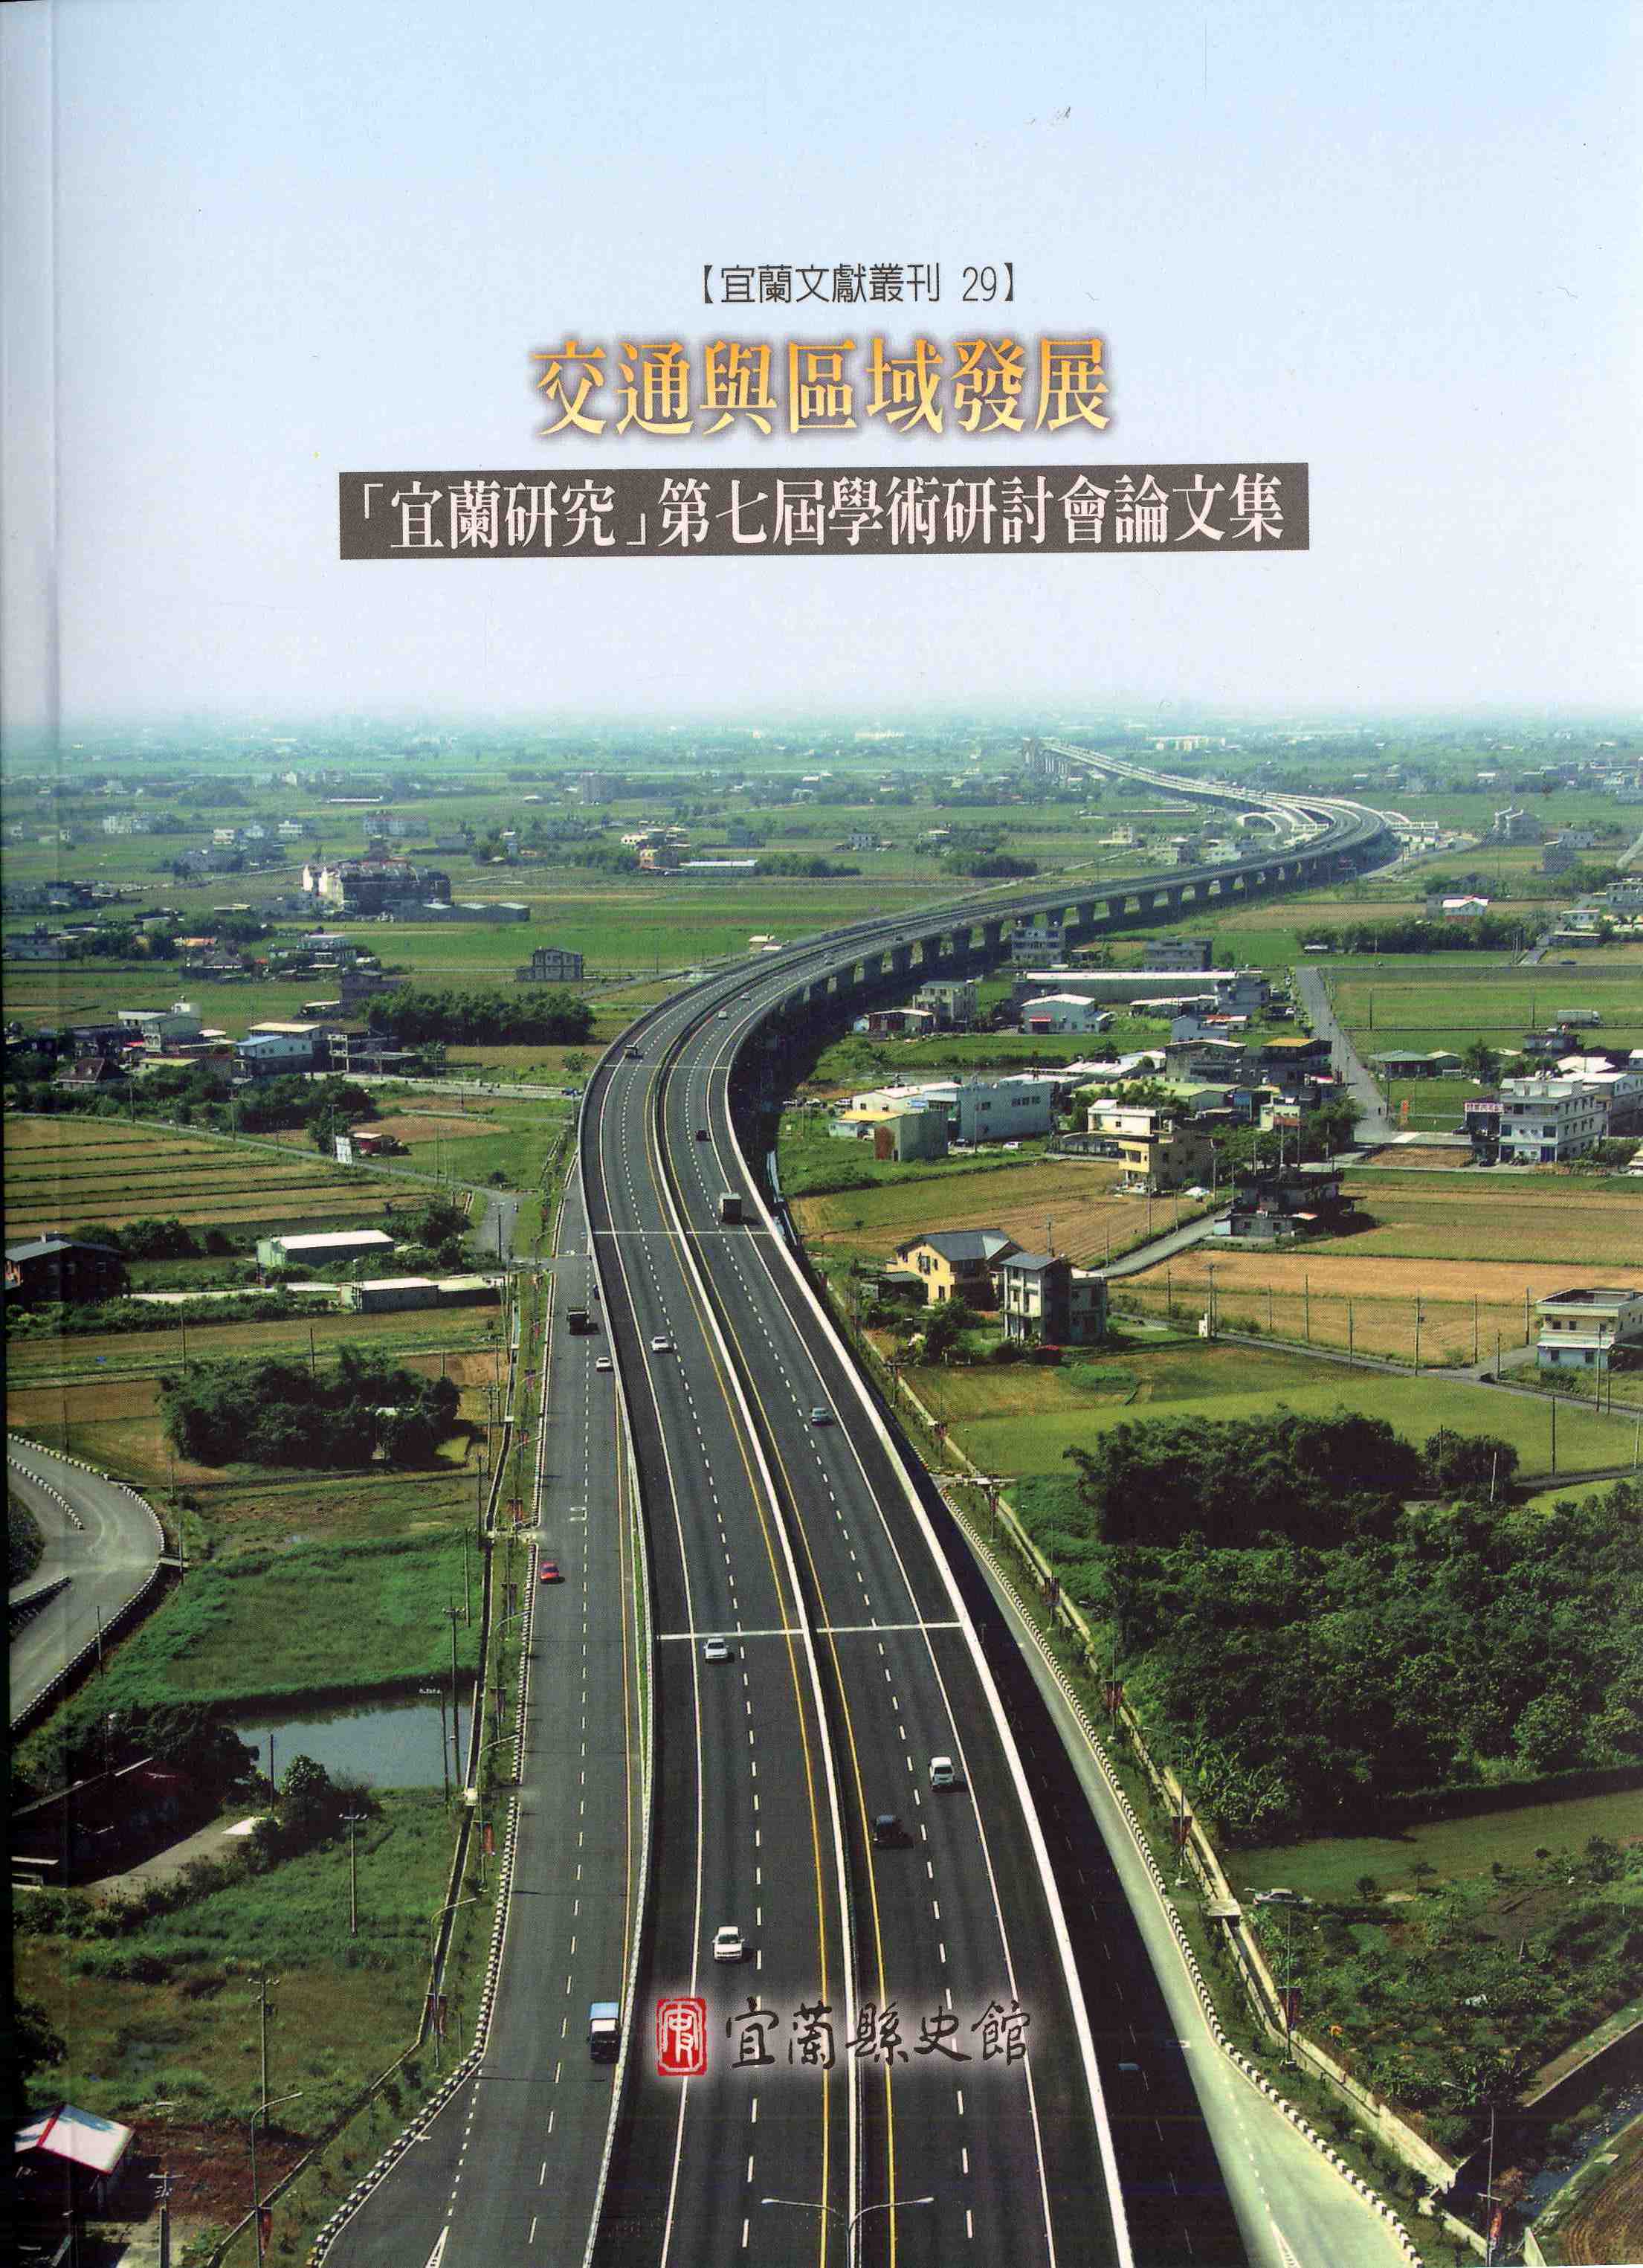 交通與區域發展──「宜蘭研究」第七屆學術研討會論文集